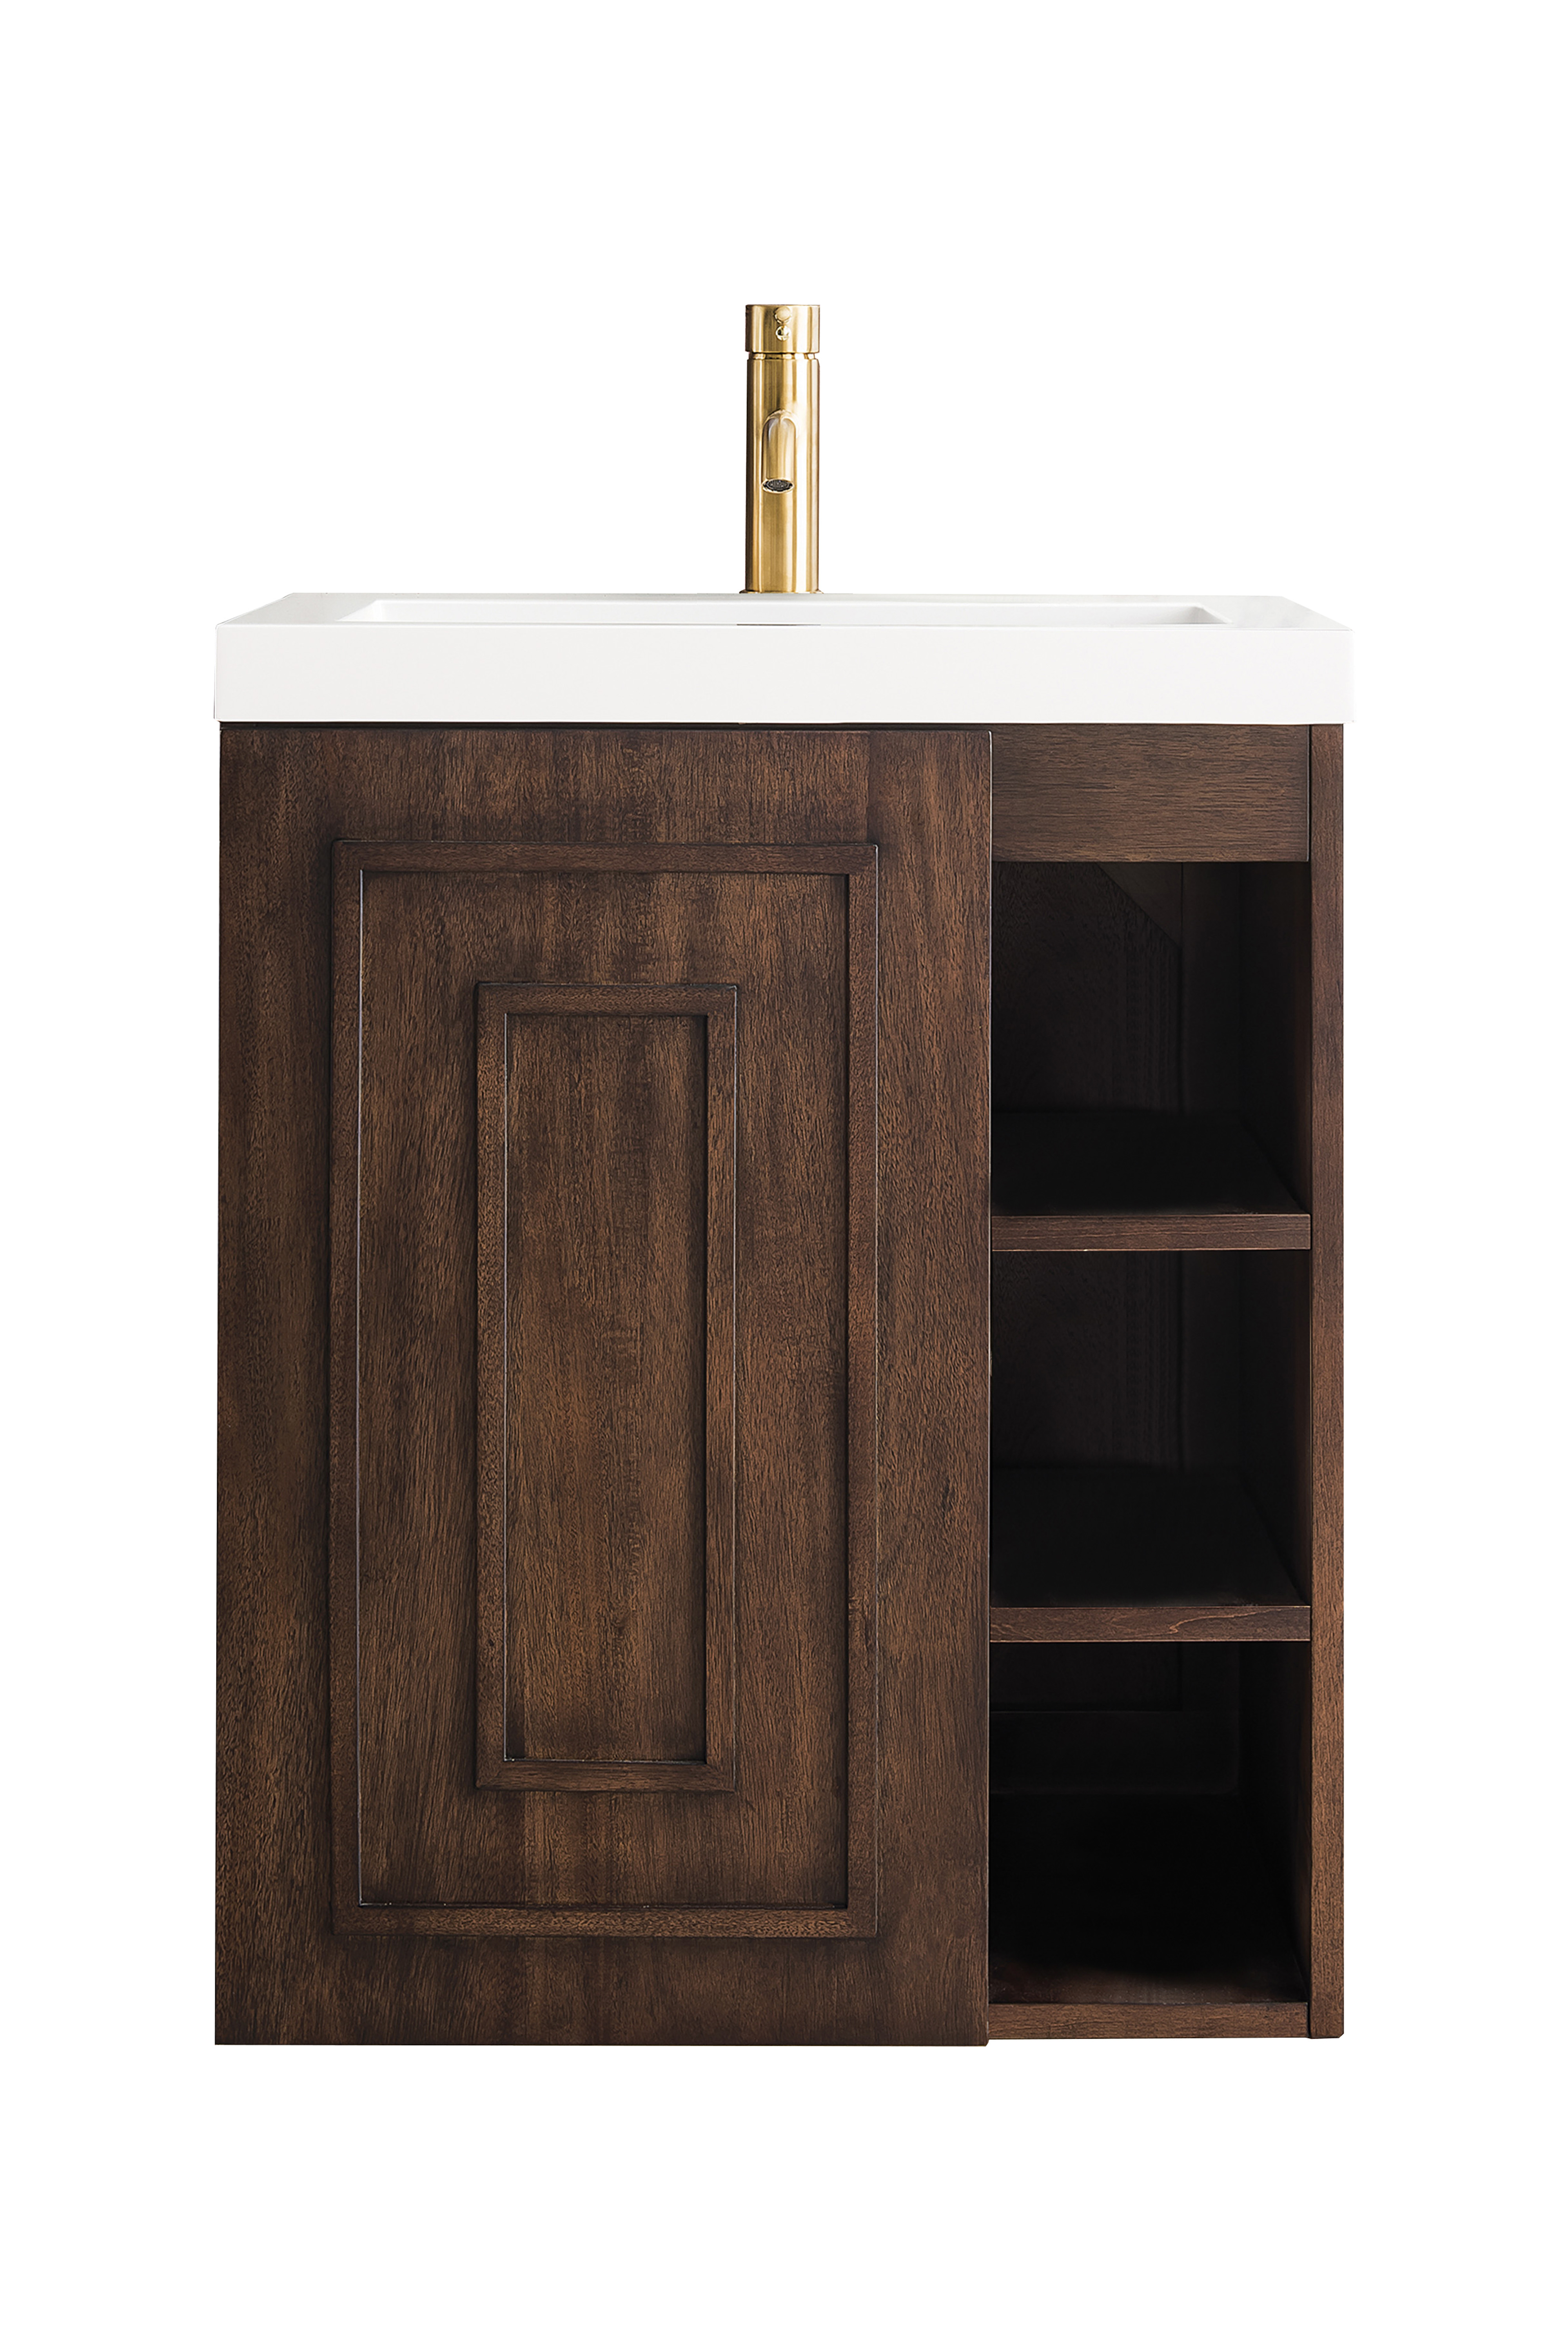 James Martin E110V24MCAWG Alicante' 24" Single Vanity Cabinet, Mid Century Acacia w/ White Glossy Composite Countertop